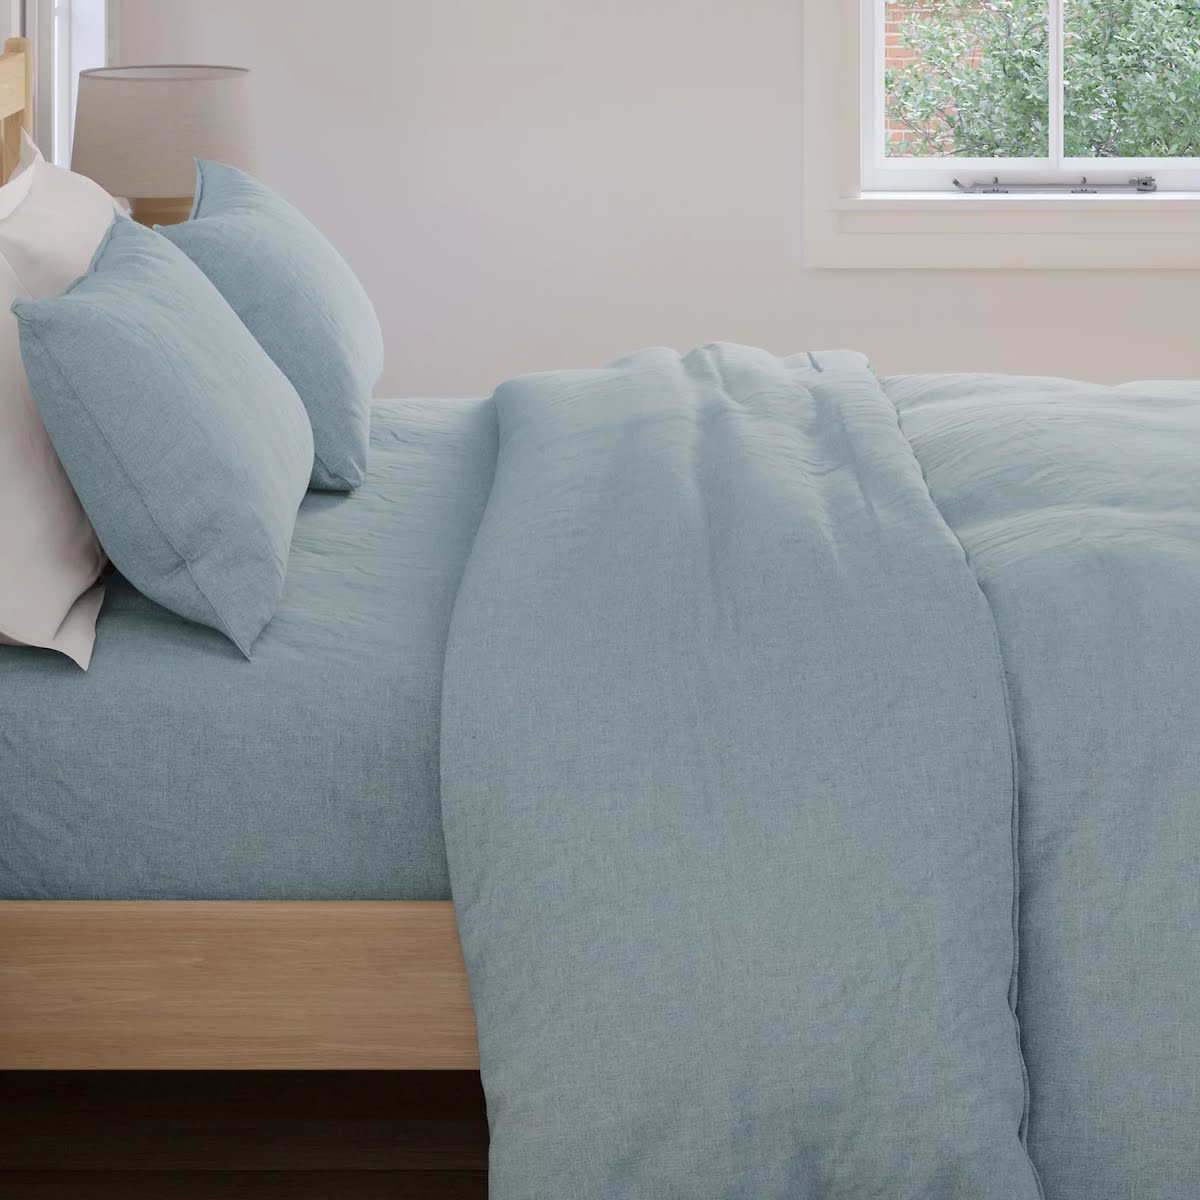 Pure Linen Bedding Set, €105-€140, M&S